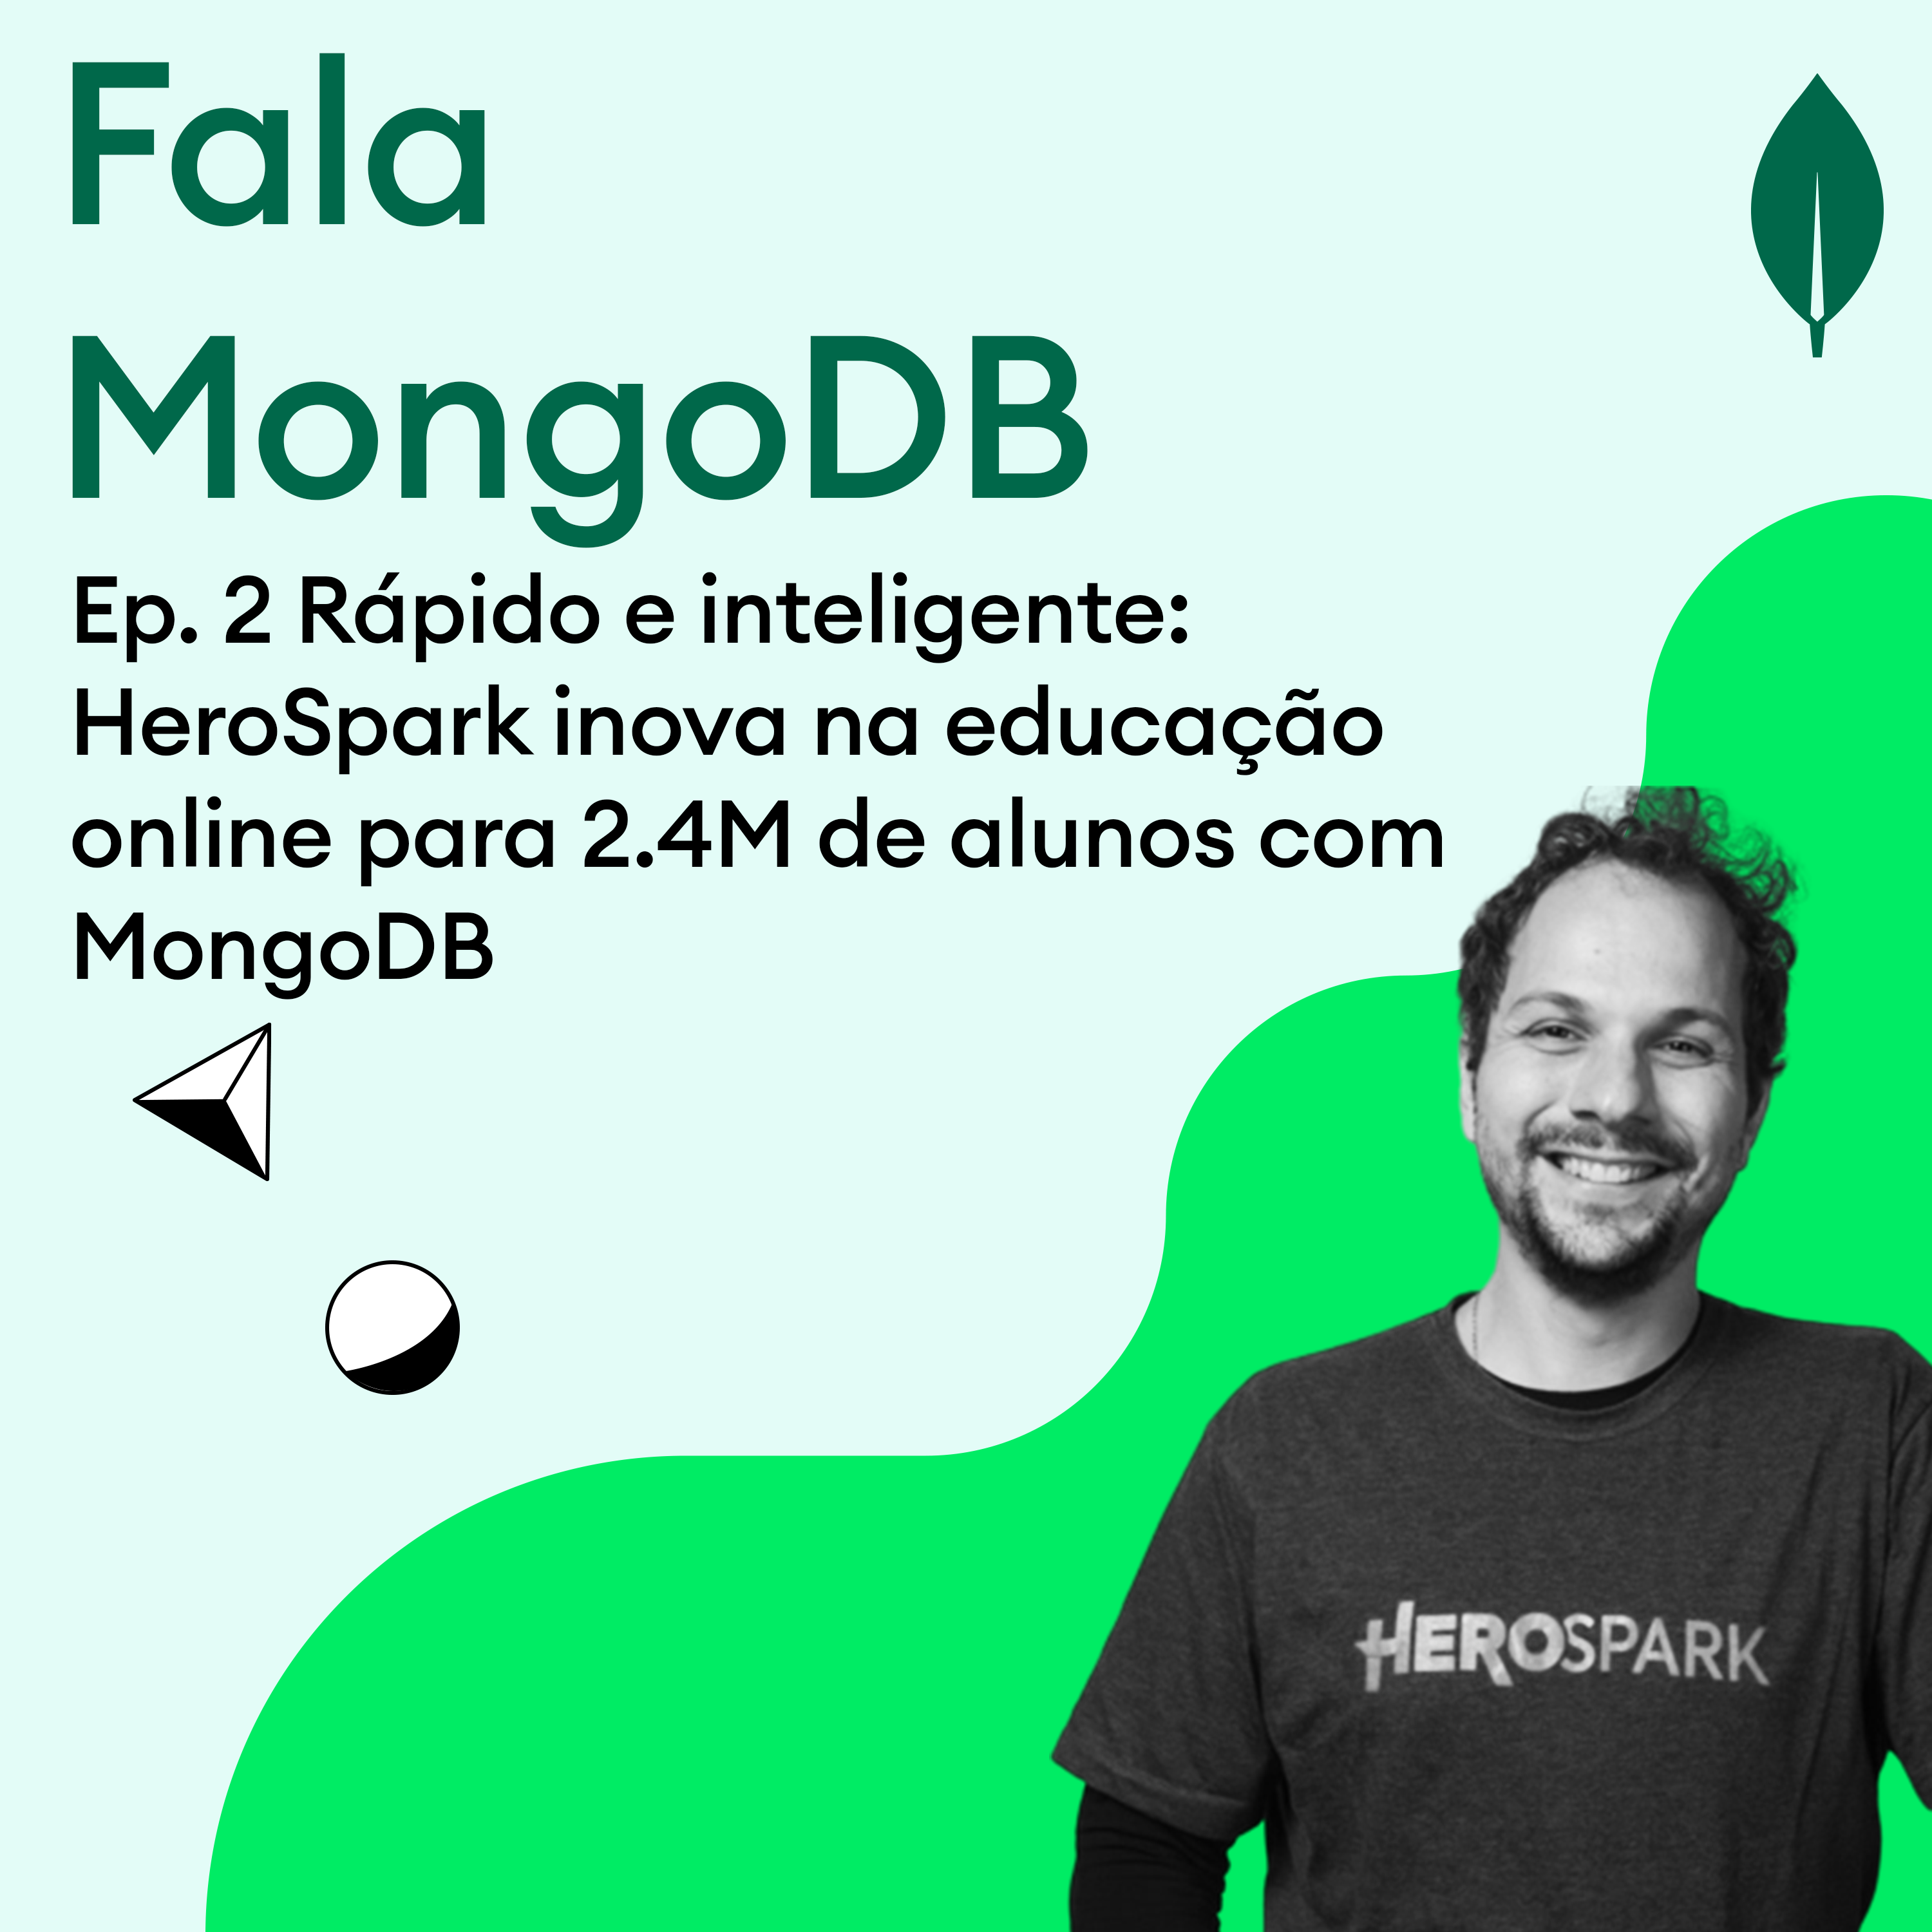 Fala MongoDB Ep. 2 Rápido e inteligente: HeroSpark inova na educação online para 2.4M de alunos com MongoDB